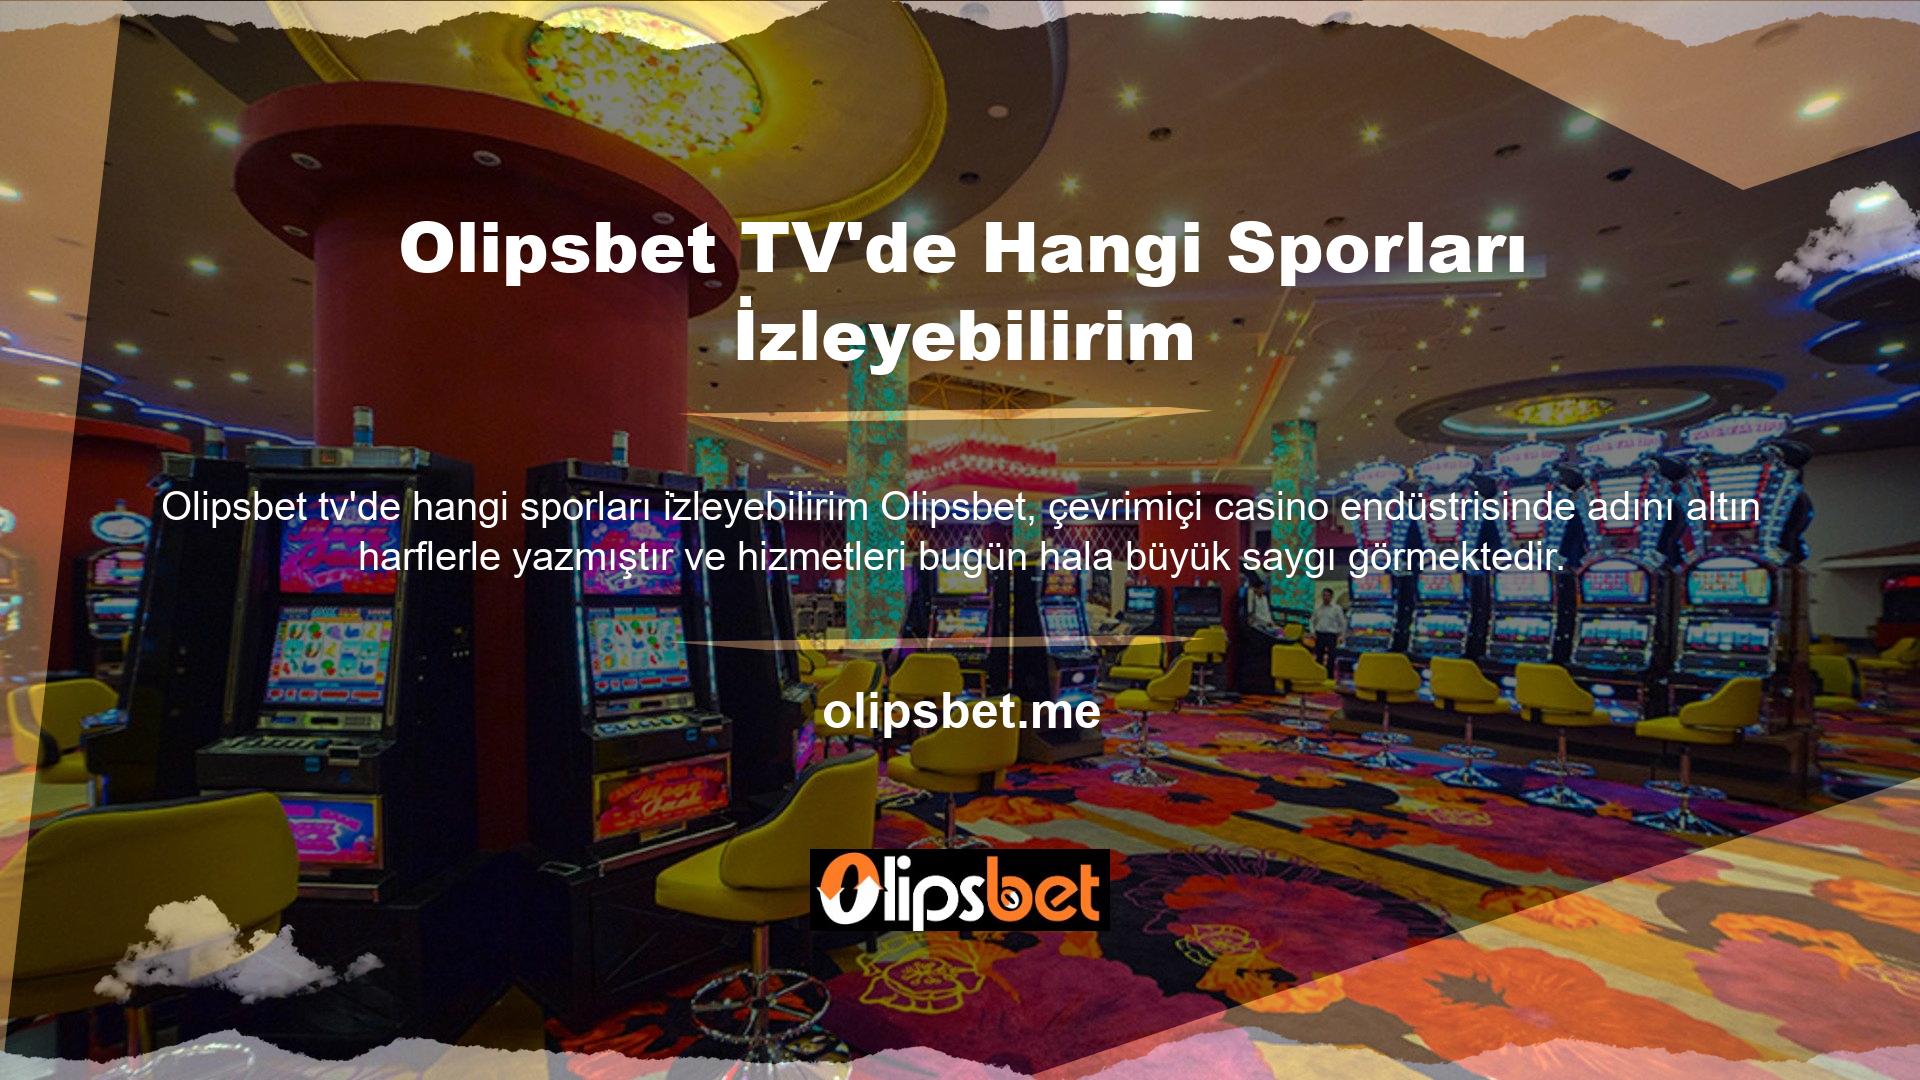 Olipsbet TV'de Hangi Sporları İzleyebilirim